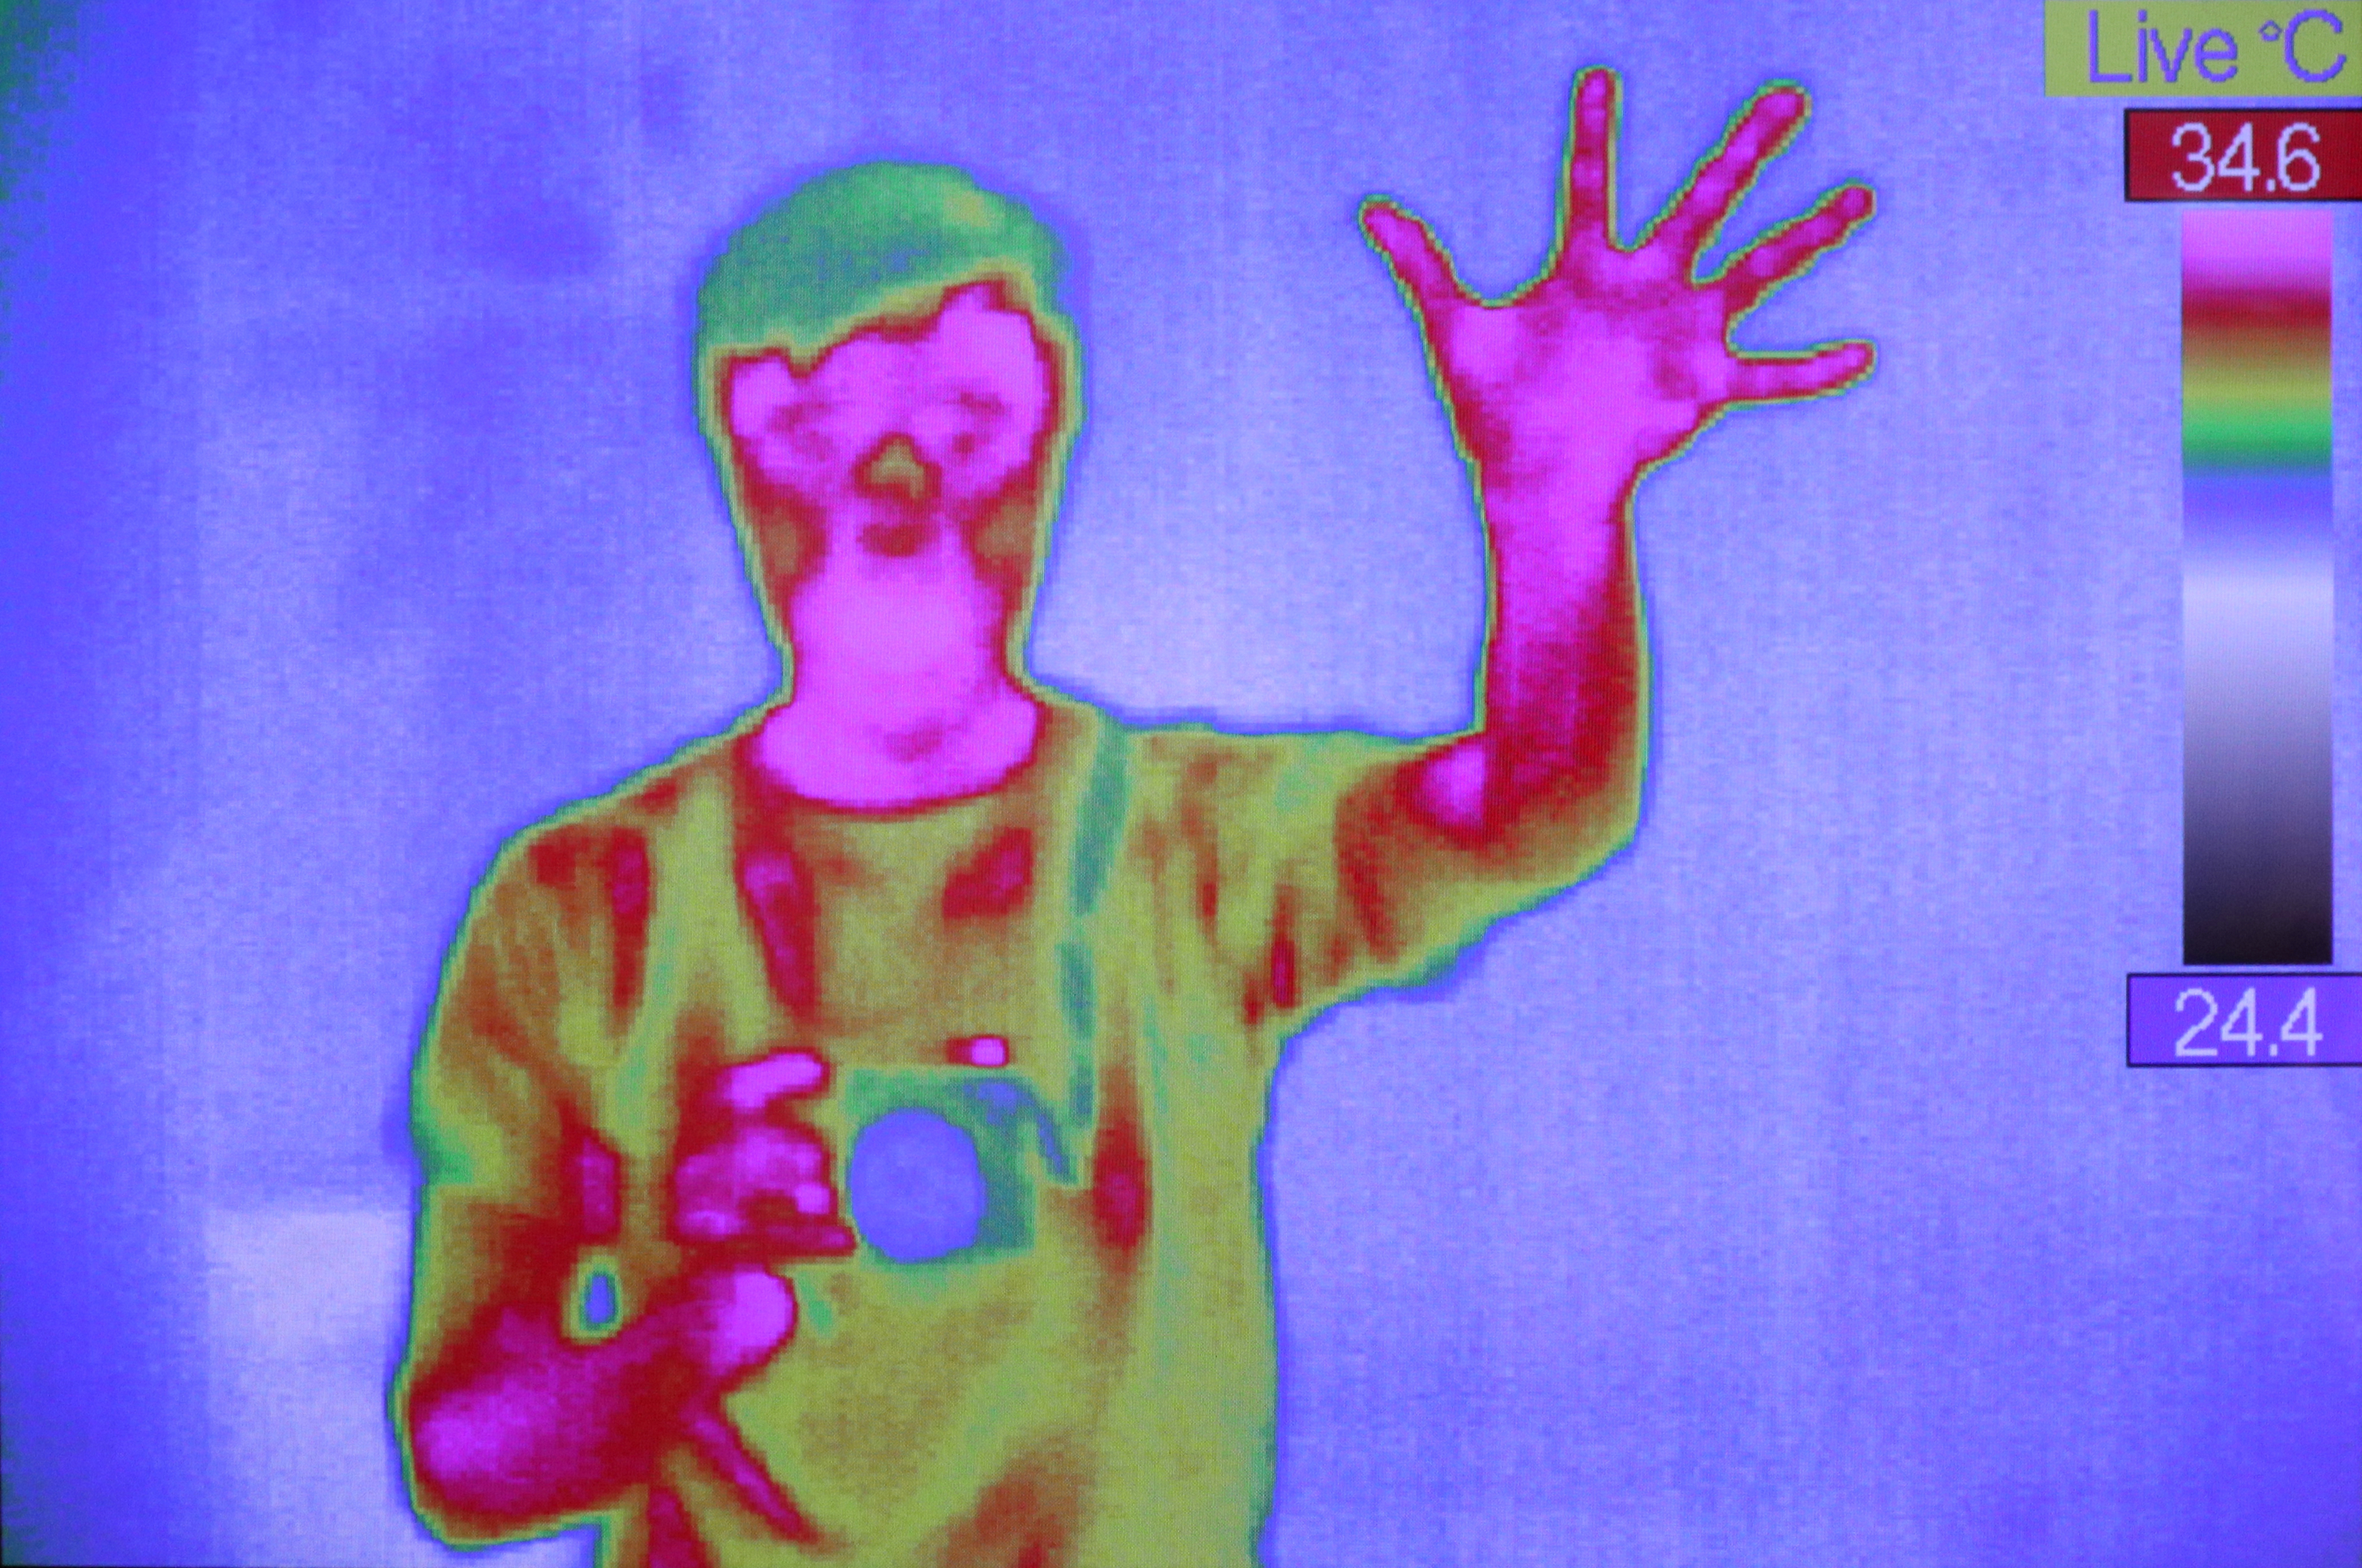 Ein Bildschirm zeigt den Oberkörper einer Person. Sie ist in verschiedenen Farben dargestellt, die der Wärmeverteilung entsprechen. Rechts im Bild befindet sich eine Farbskala, die anzeigt, welche Farbe welcher Temperatur entspricht. Die Person winkt in die Kamera, während sie mit der anderen Hand etwas vor ihren Körper hält.